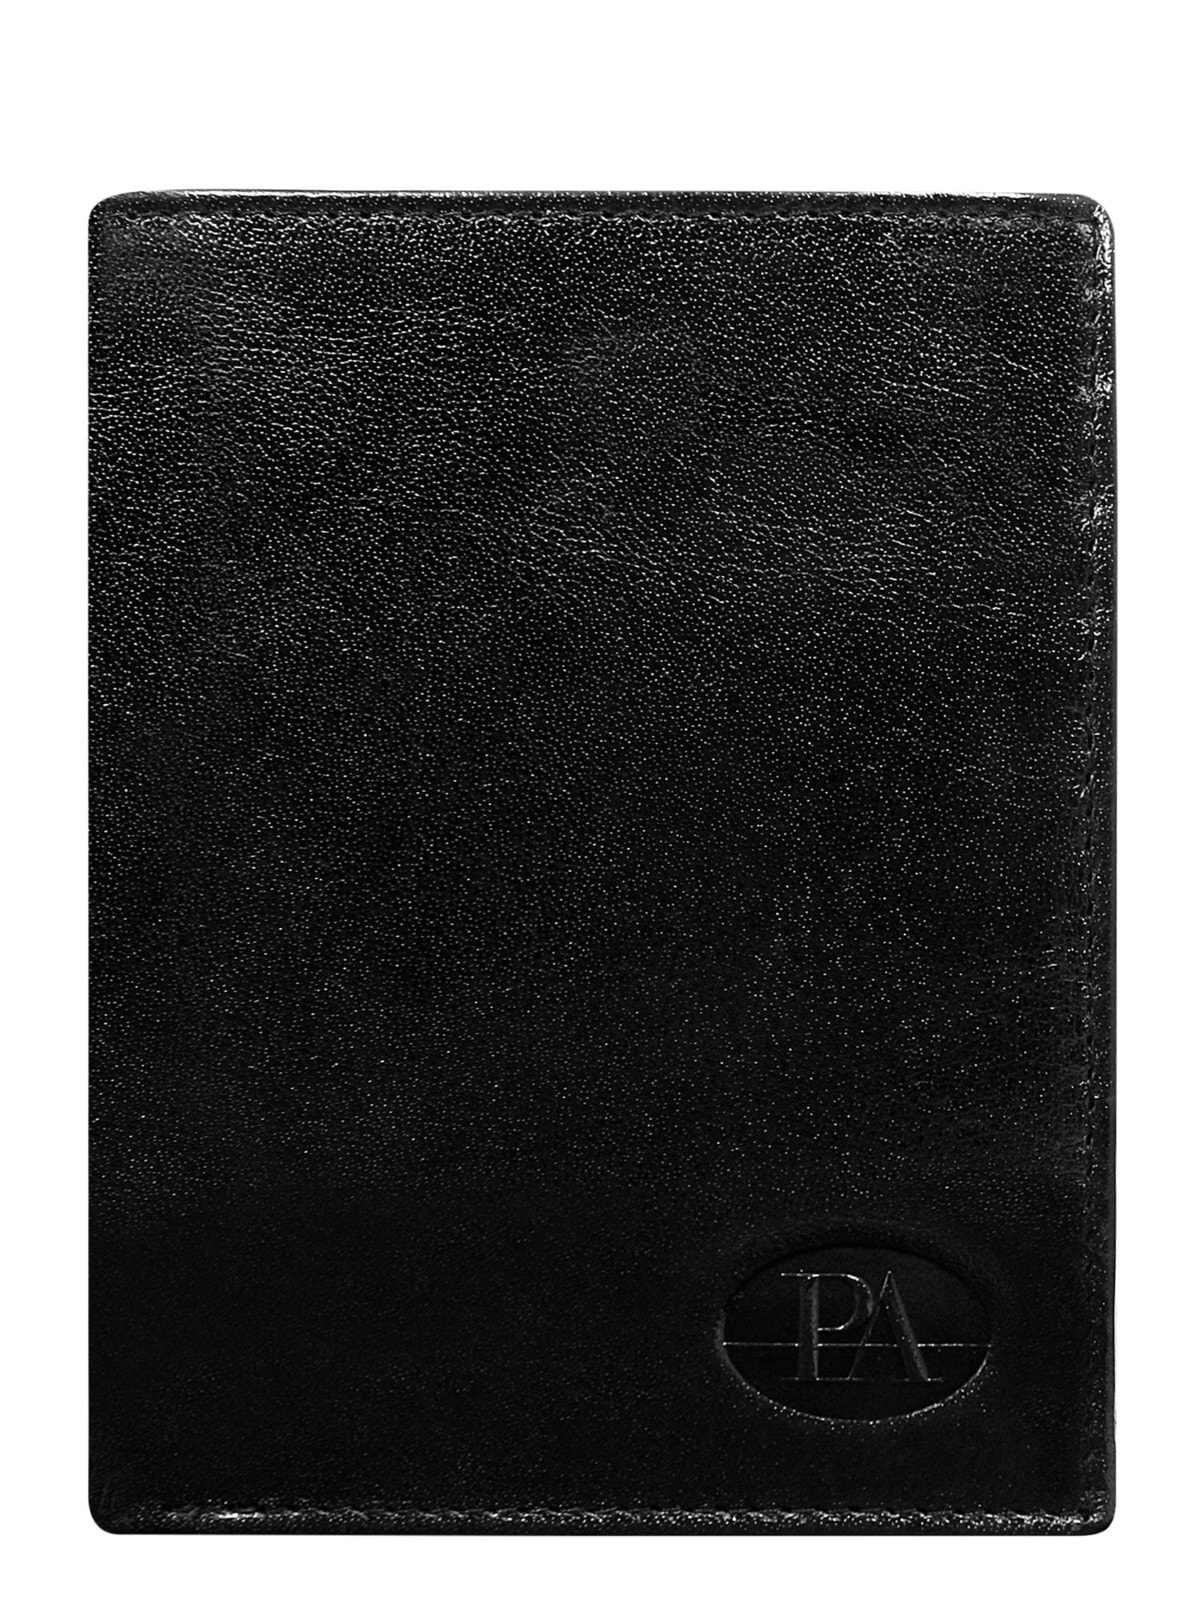 Мужское портмоне кожаное черное вертикальное без застежки  Portfel-CE-PR-PW-007-BTU.32-czarny	Factory Price